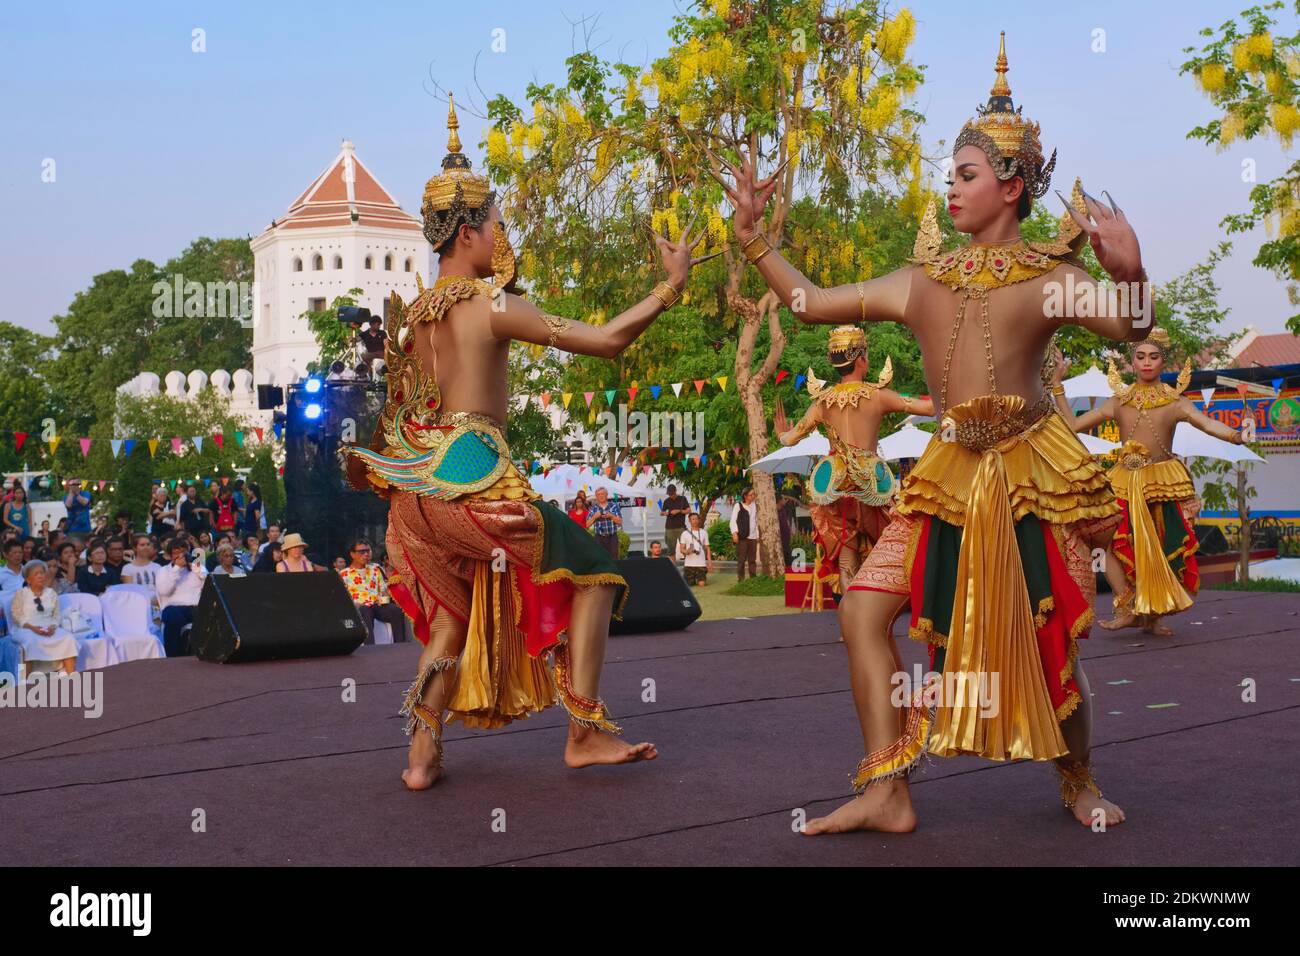 Männliche Thai-Tänzer in traditioneller Tracht in einer Open-Air-Aufführung des traditionellen Thai-Tanzes im Santichaiprakarn Park, Banglamphoo, Bangkok, Thailand Stockfoto